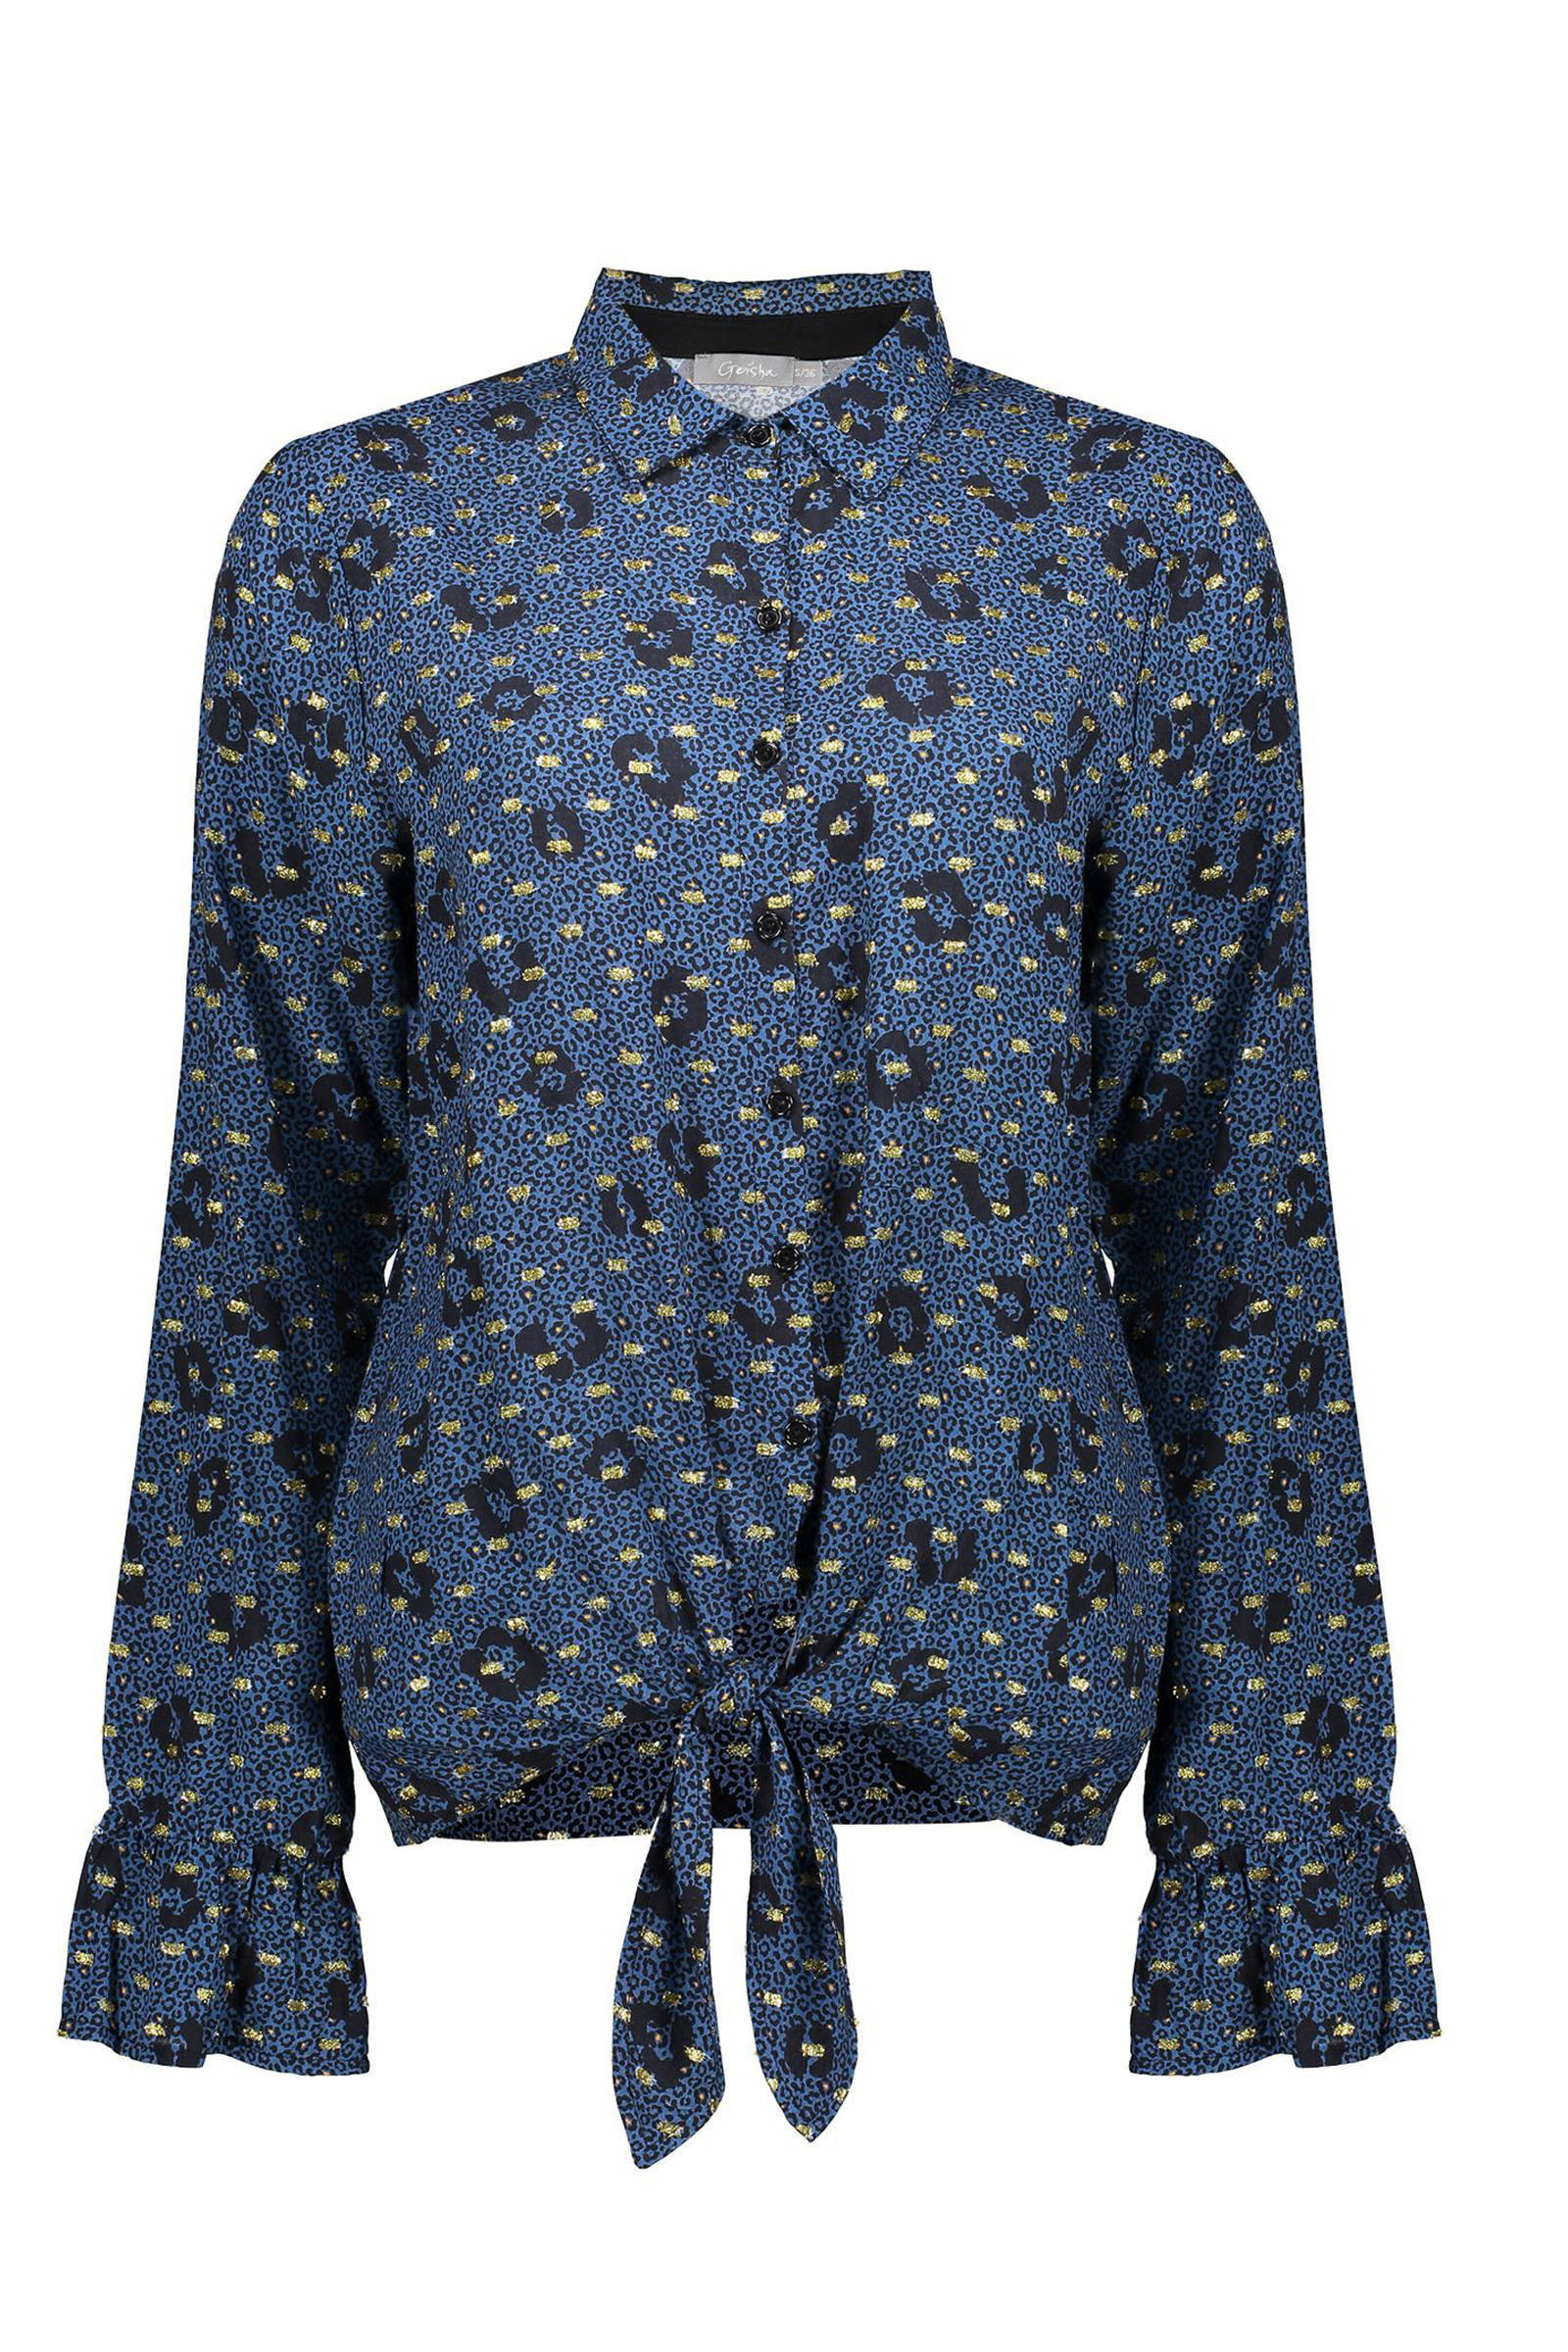 Geisha blouse met panterprint en glitters blauw/zwart/goud online kopen